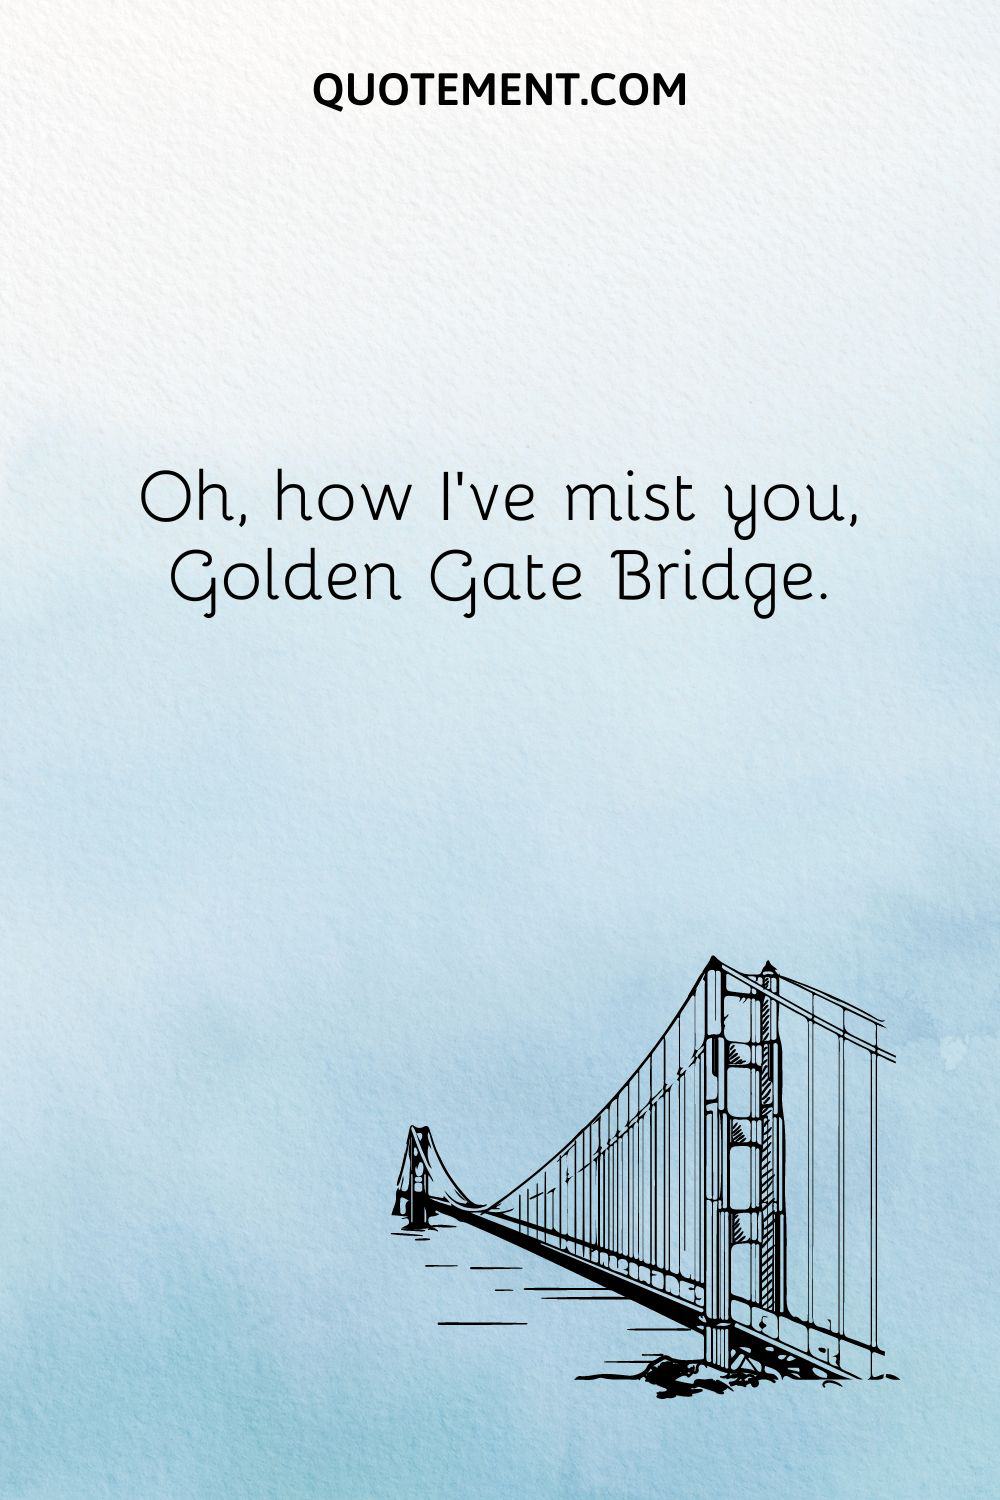  Oh, how I’ve mist you, Golden Gate Bridge.
